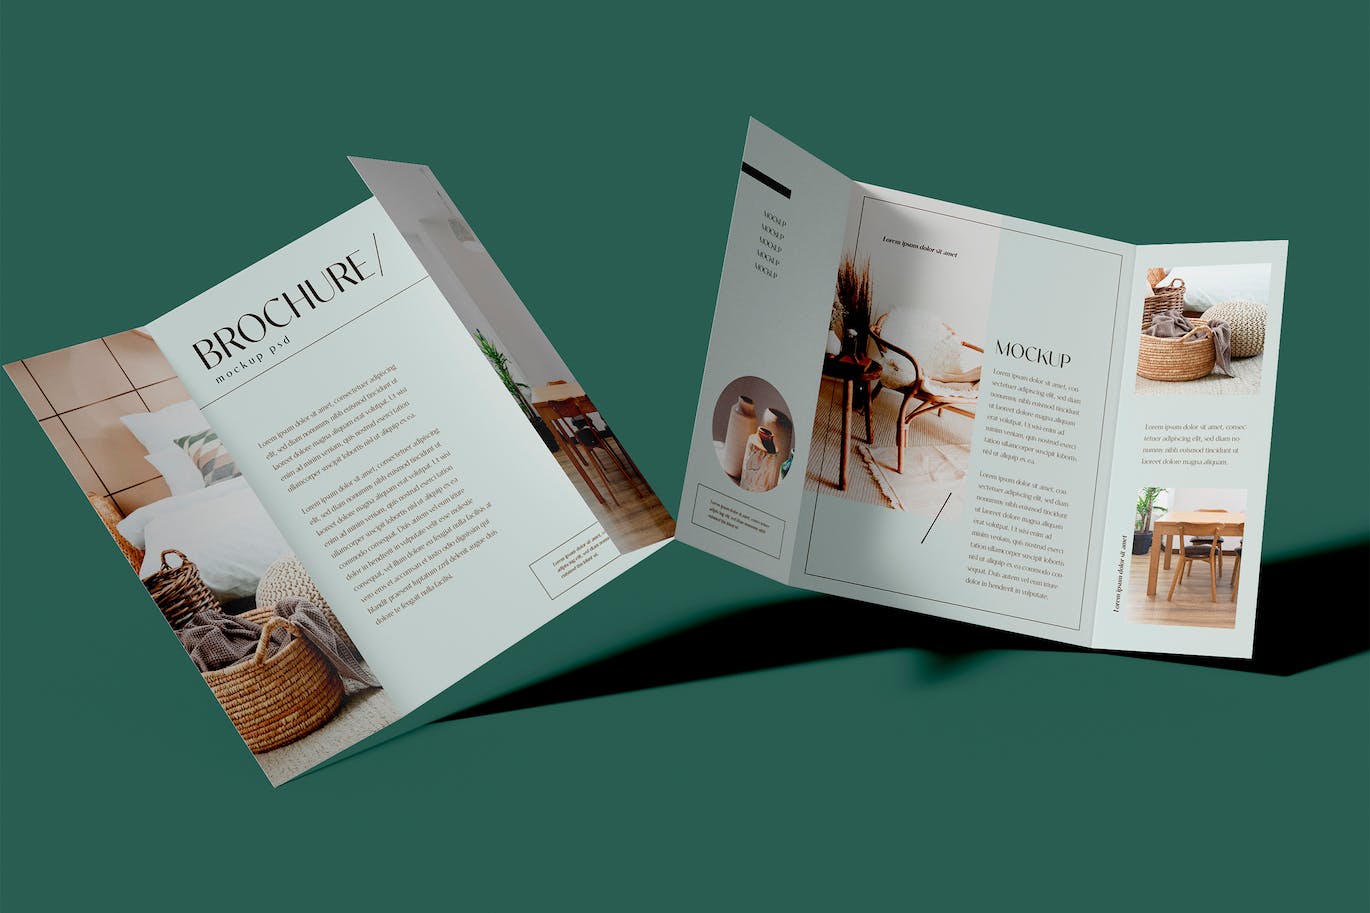 折页时尚杂志宣传册设计样机psd模板v8 Brochure Mockup 样机素材 第1张